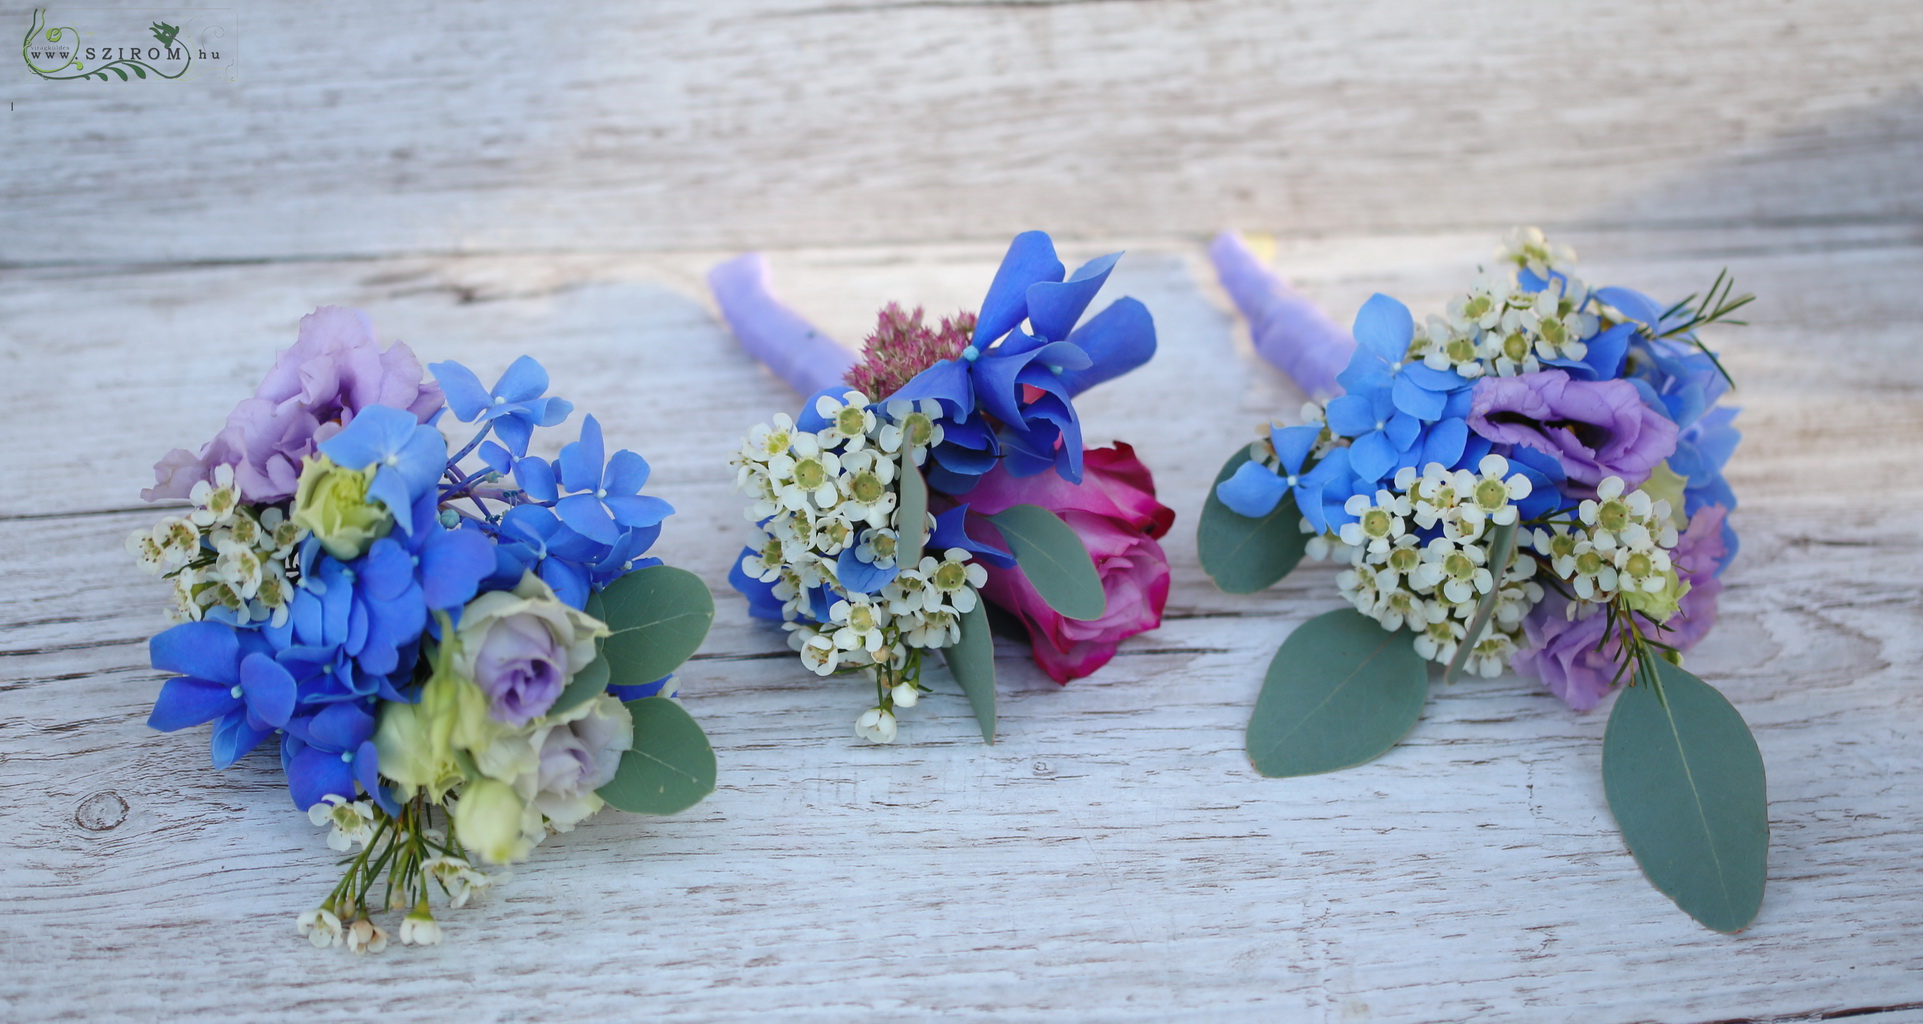 színes kitűzők (hortenzia, rózsa, viaszvirág, kék, lila)